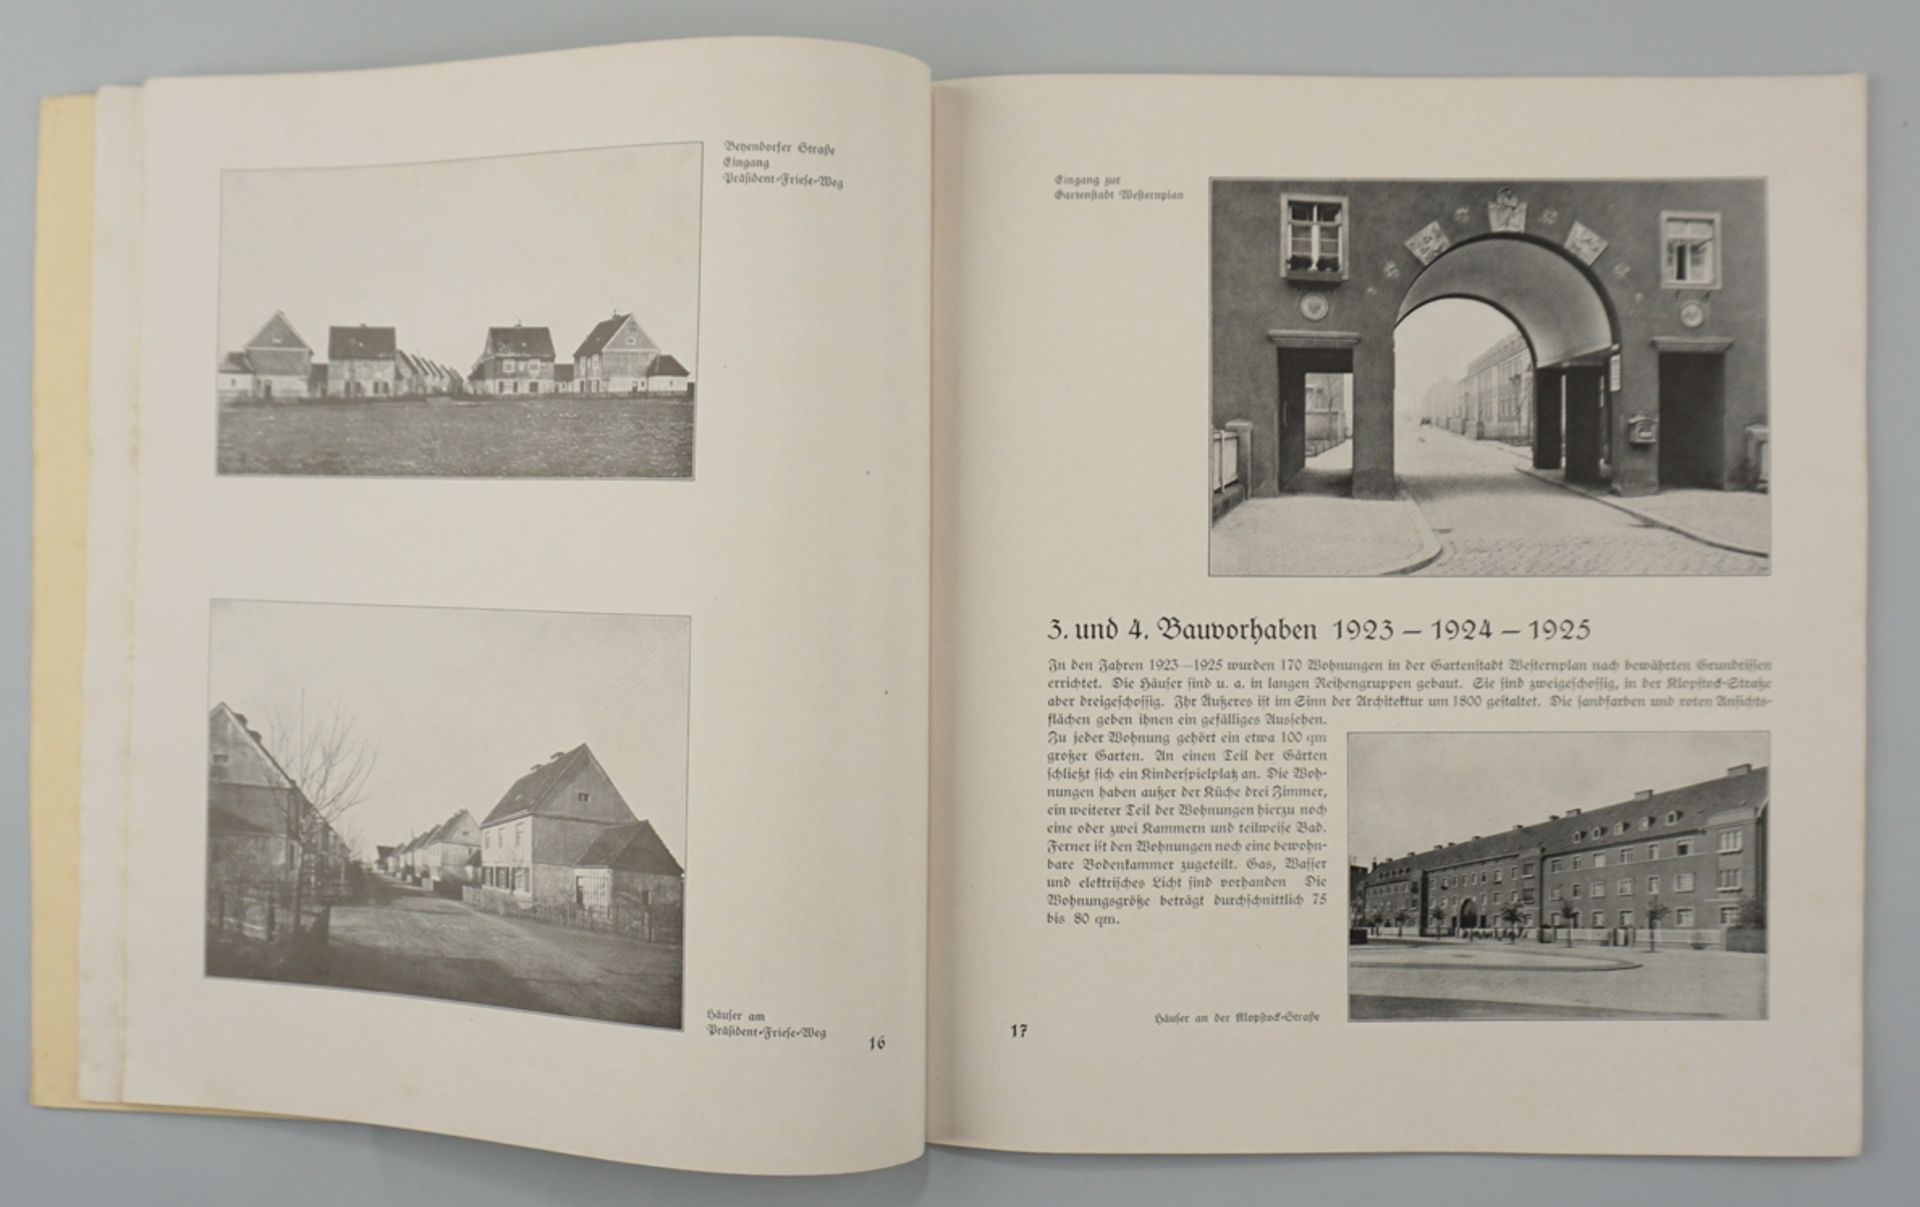 10 Jahre Heimstättenbaugenossenschaft E.G.M.B.H. zu Magdeburg, 1920 / 1930 - Image 3 of 3